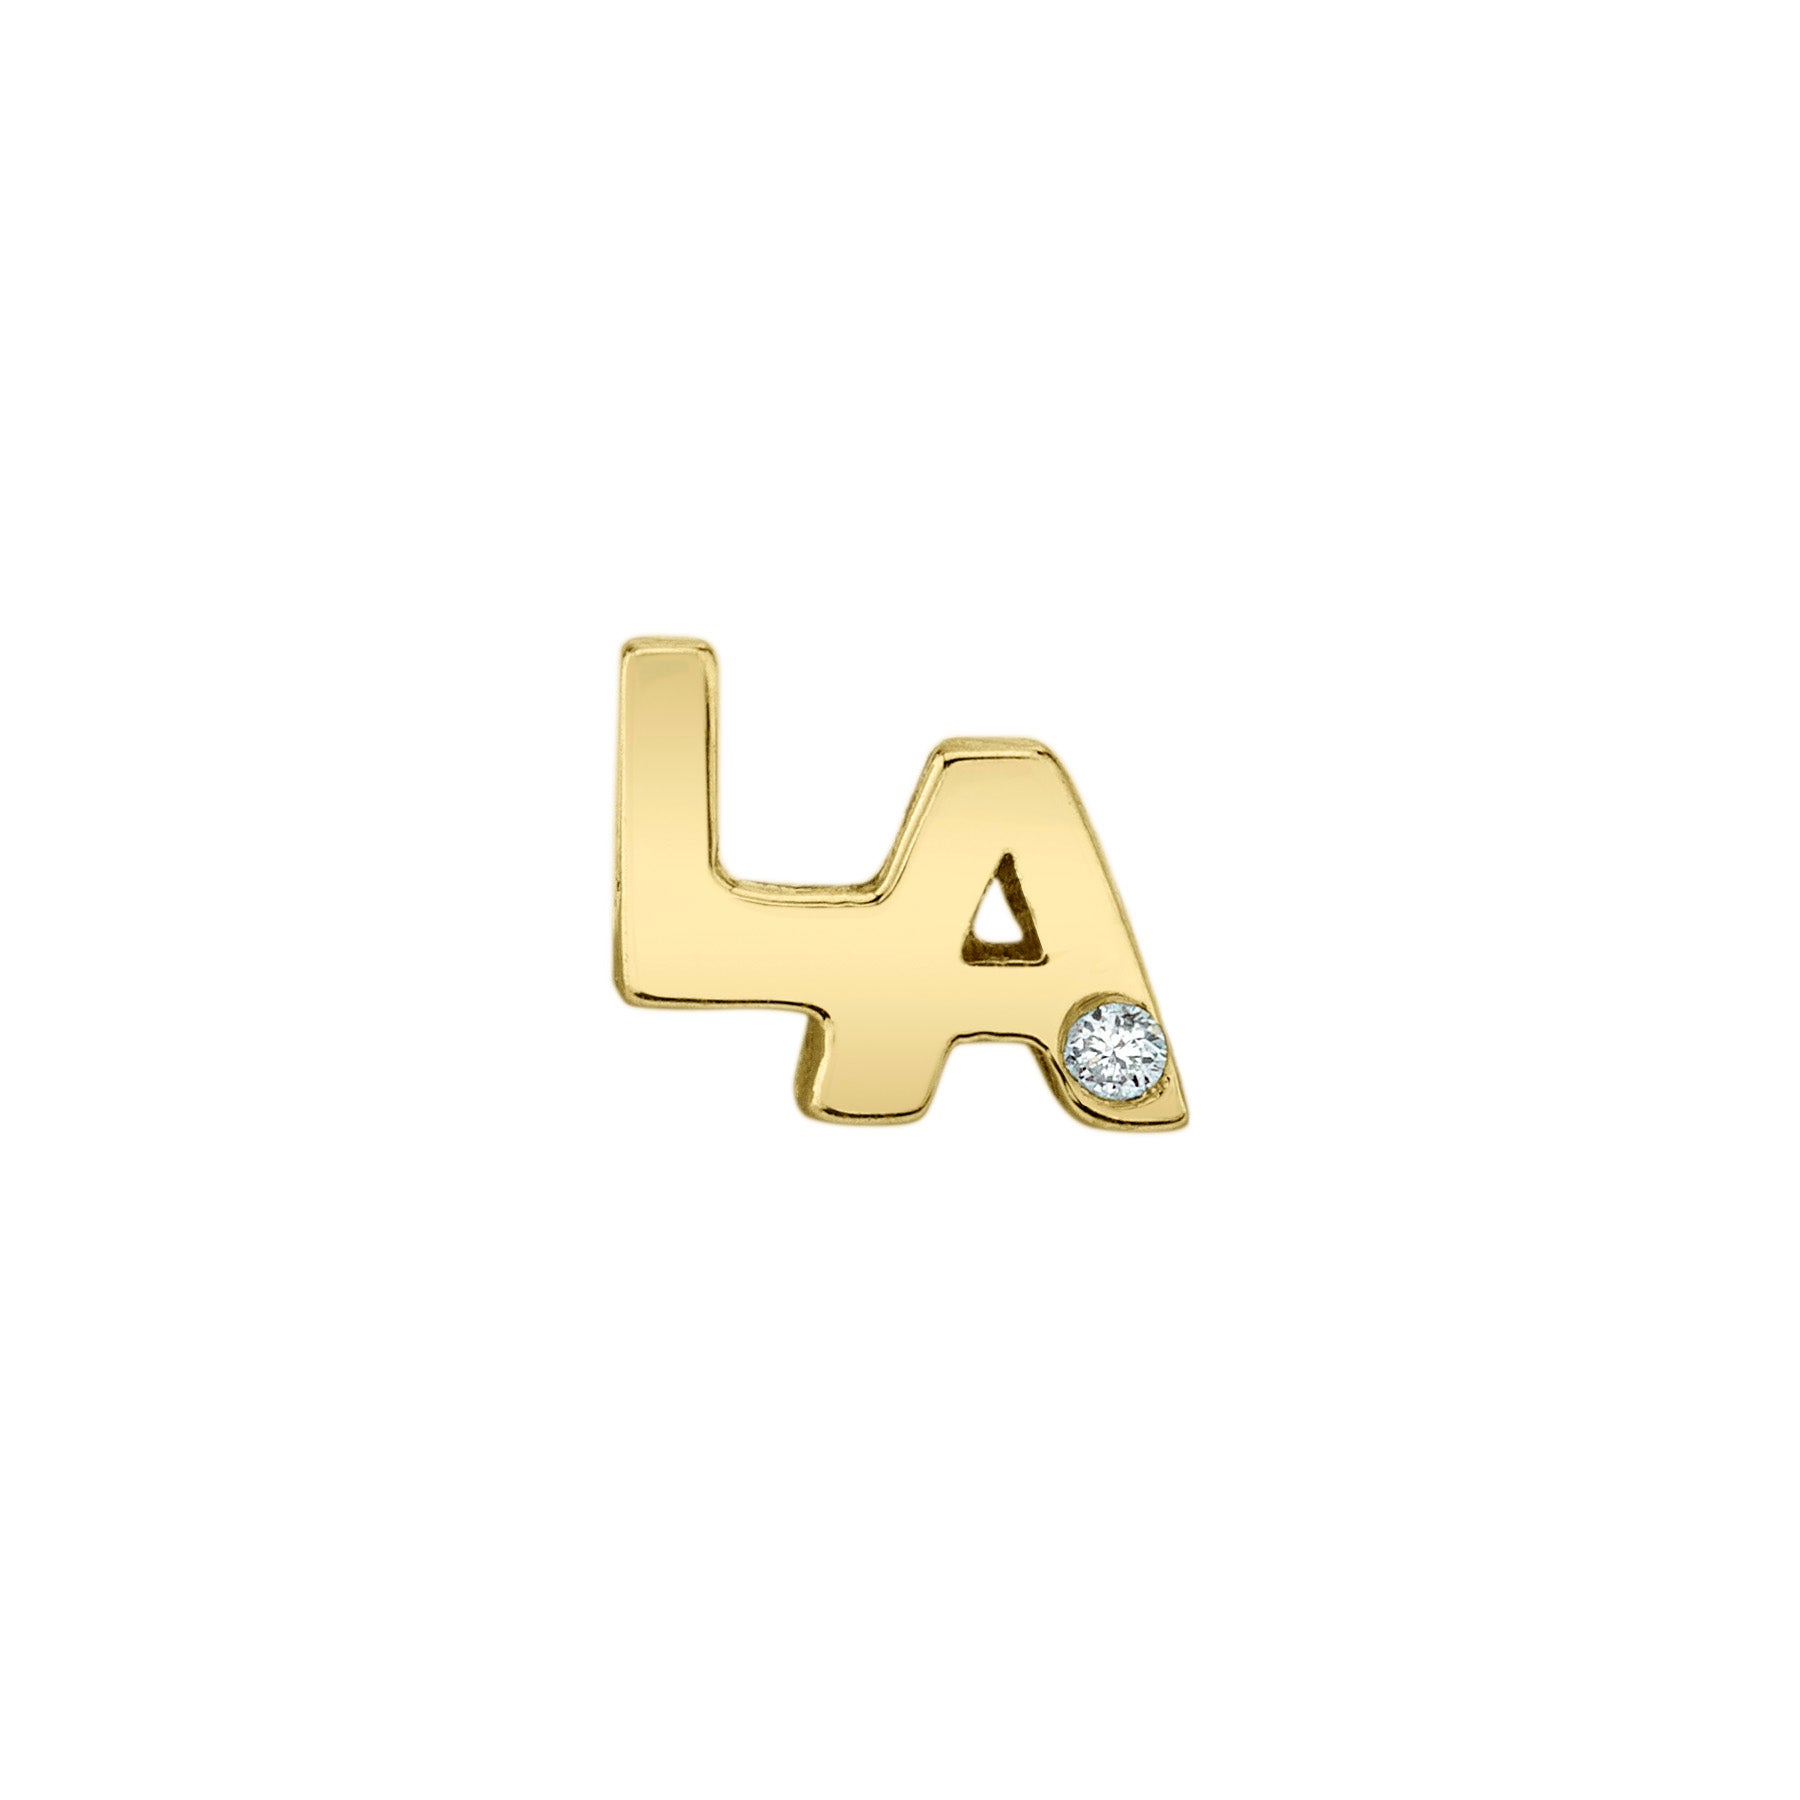 The LA Diamond Stud